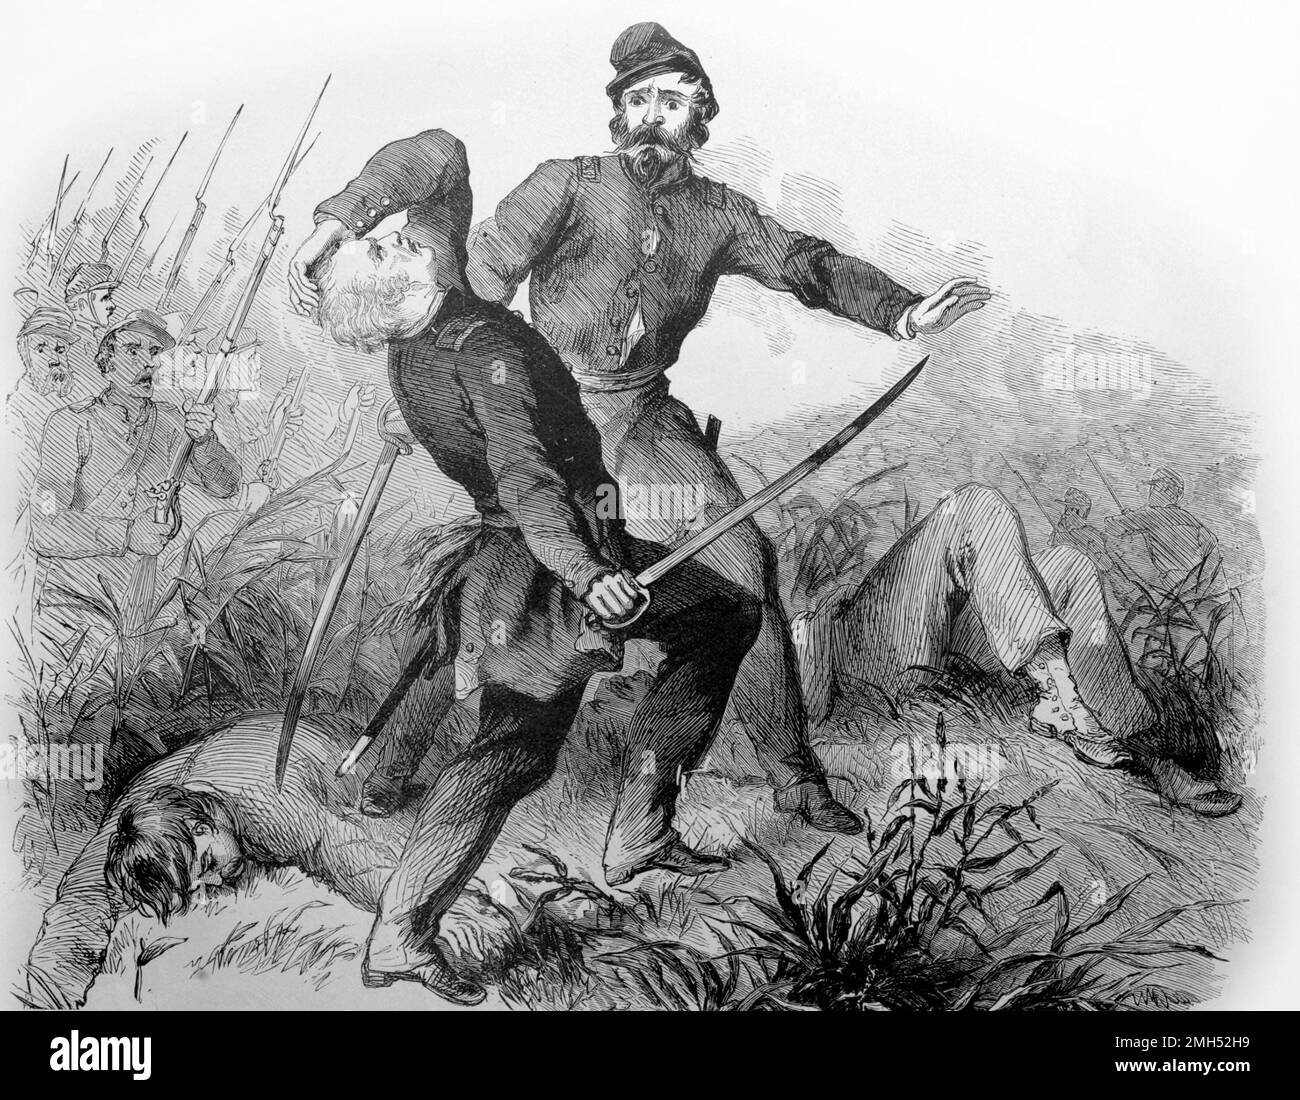 La Batalla de Ball's Bluff fue una batalla en la Guerra Civil Americana que se libró el 21st 1861 de octubre. Fue ganado por las fuerzas confederadas bajo el general Nathan Evans y el senador unionista, que luchaba como coronel, fue asesinado en la acción. Esta pintura representa la muerte del coronel Baker. Foto de stock